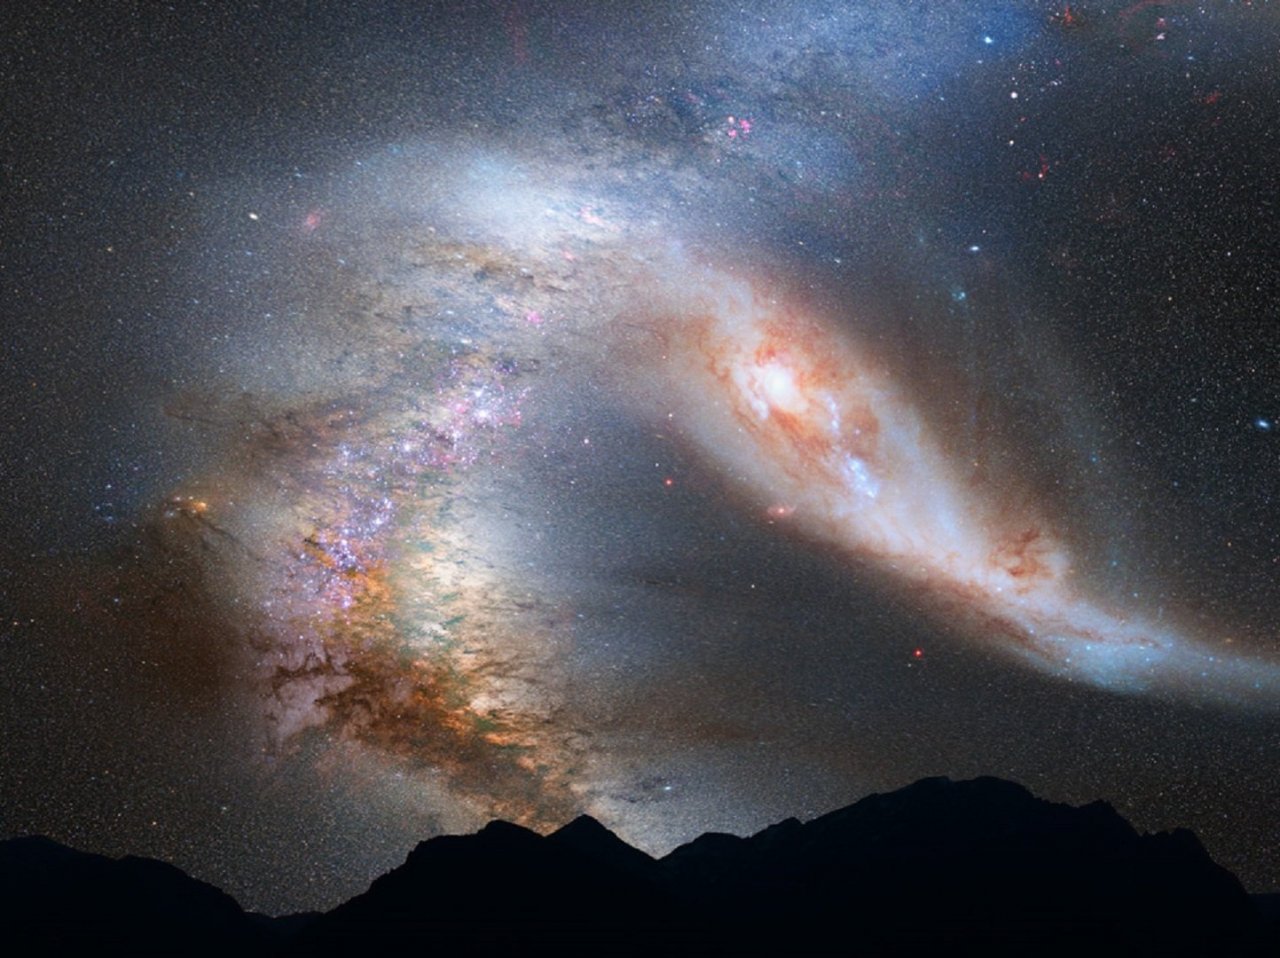 Andromeda galaxy jigsaw puzzle